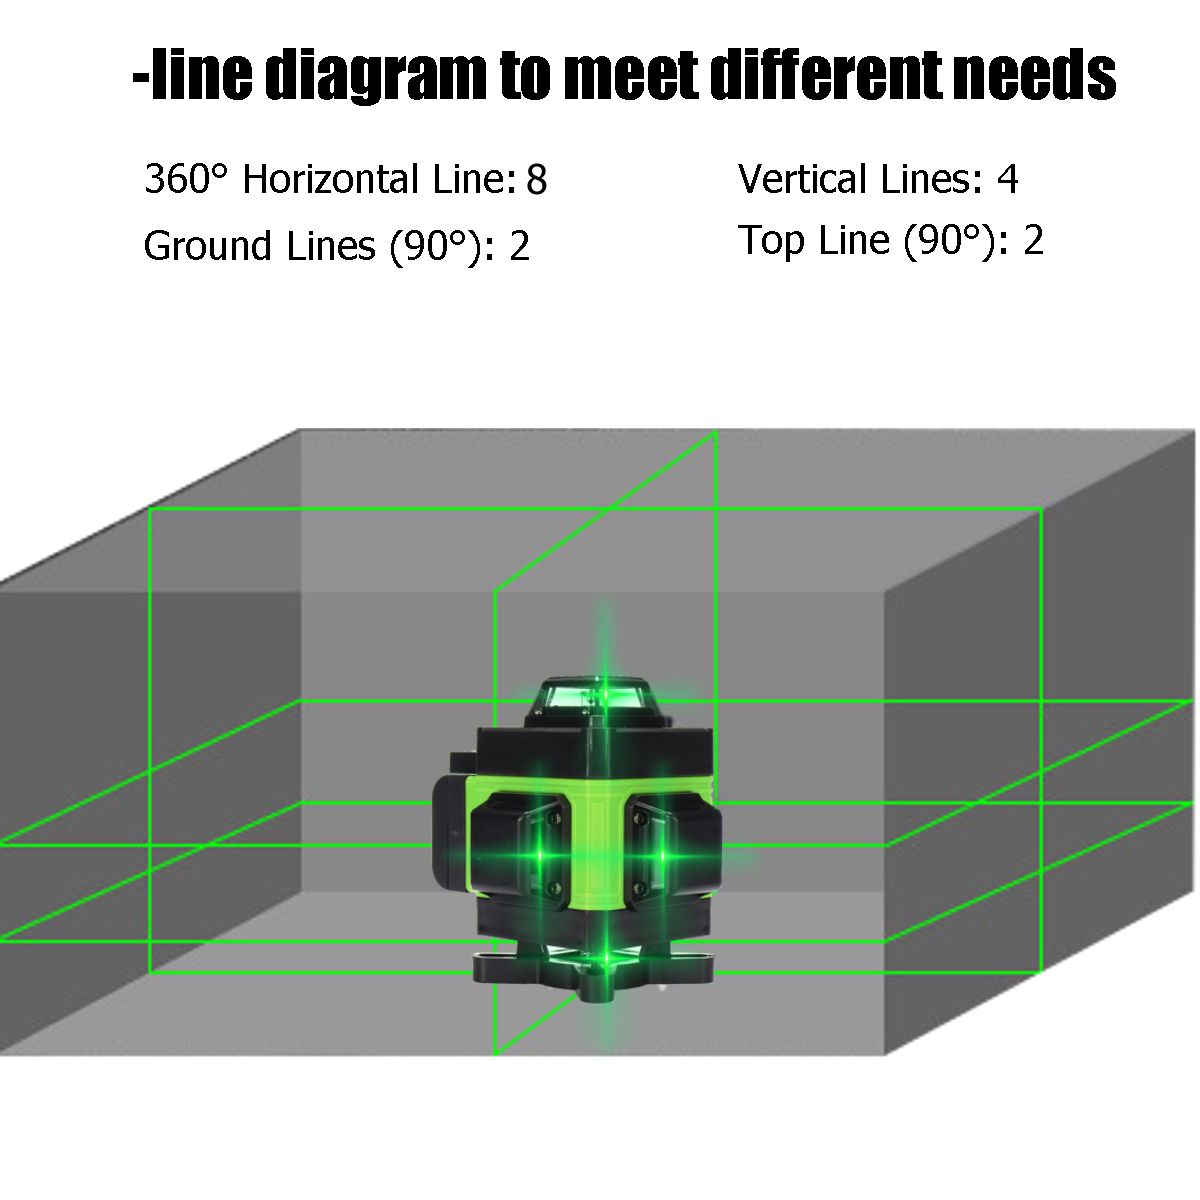 LED-Display-3D-360deg-16-Line-Green-Light-Laser-Level-Cross-Self-Leveling-Measure-Tool-1700669